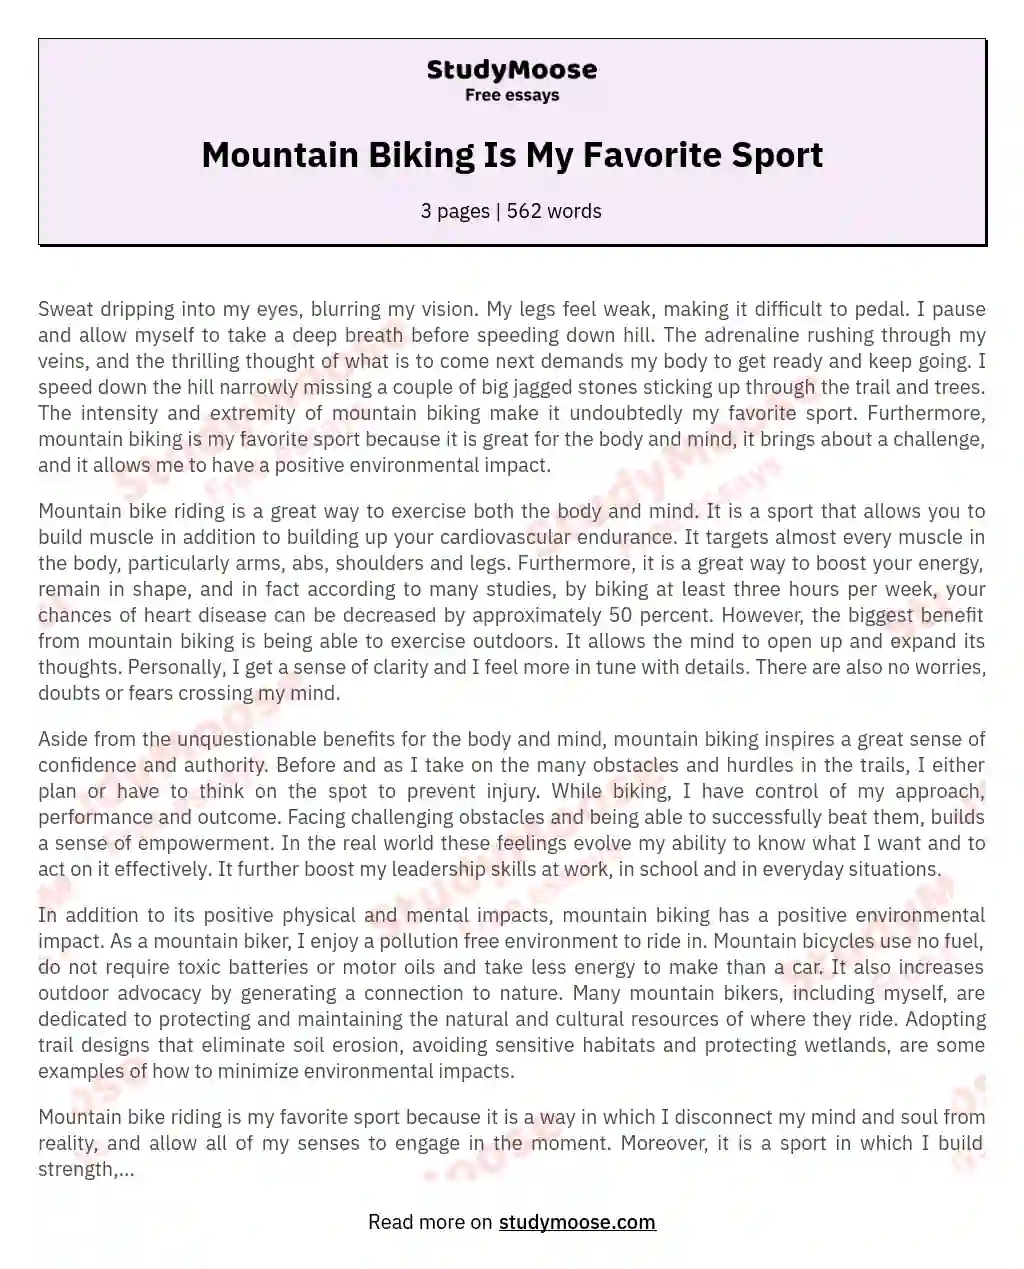 Mountain Biking Is My Favorite Sport essay